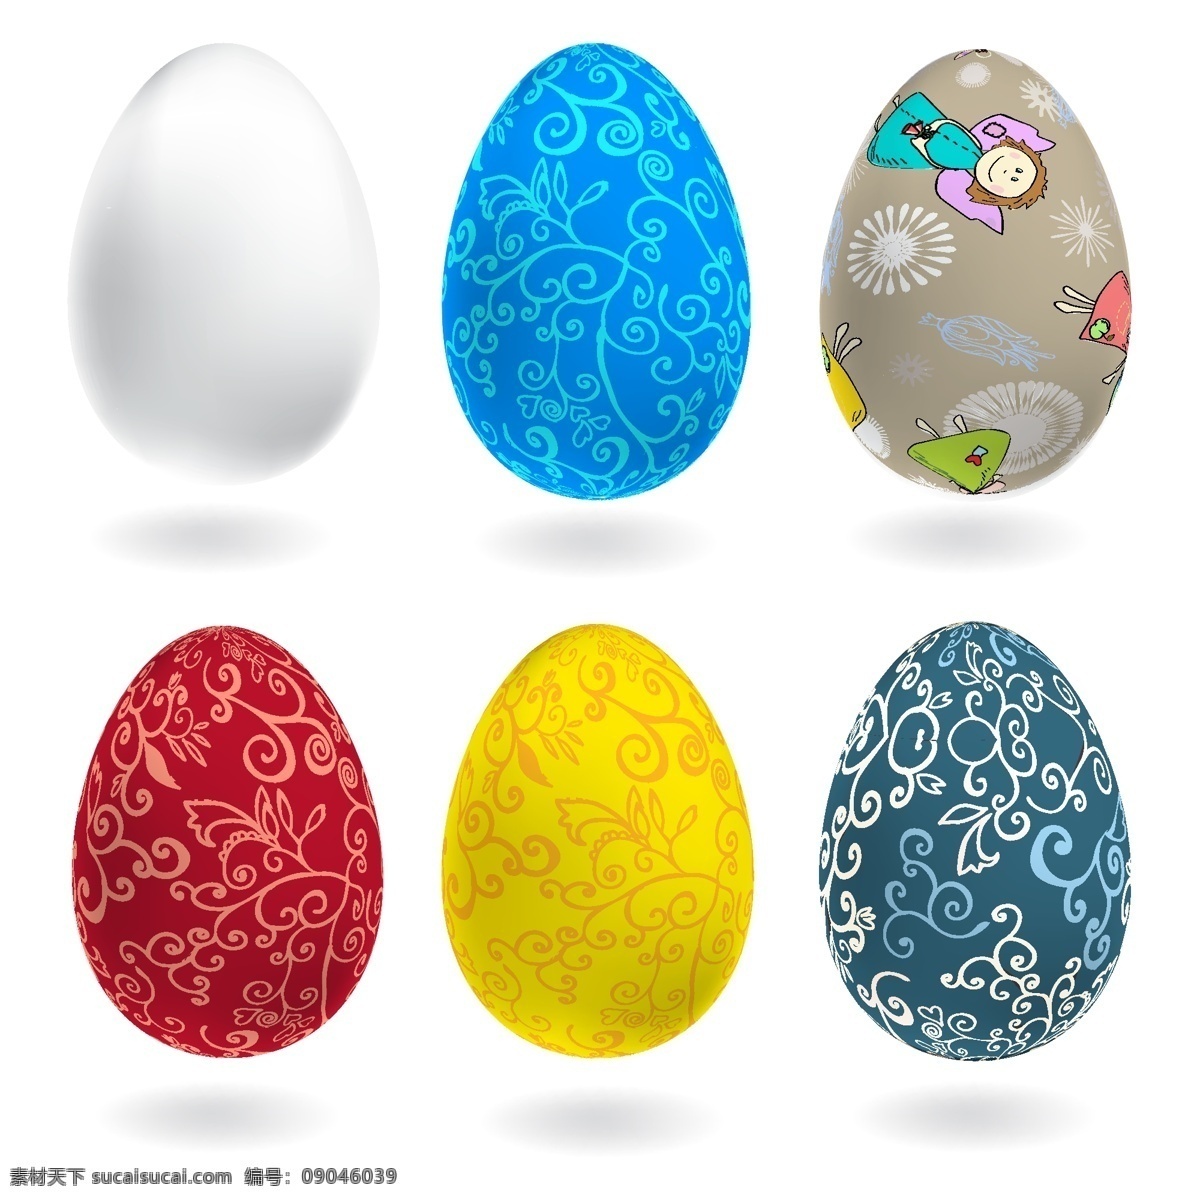 复活节 手绘 鸡蛋 彩蛋 卡通 节日素材 复活节背景 矢量 文化艺术 节日庆祝 白色